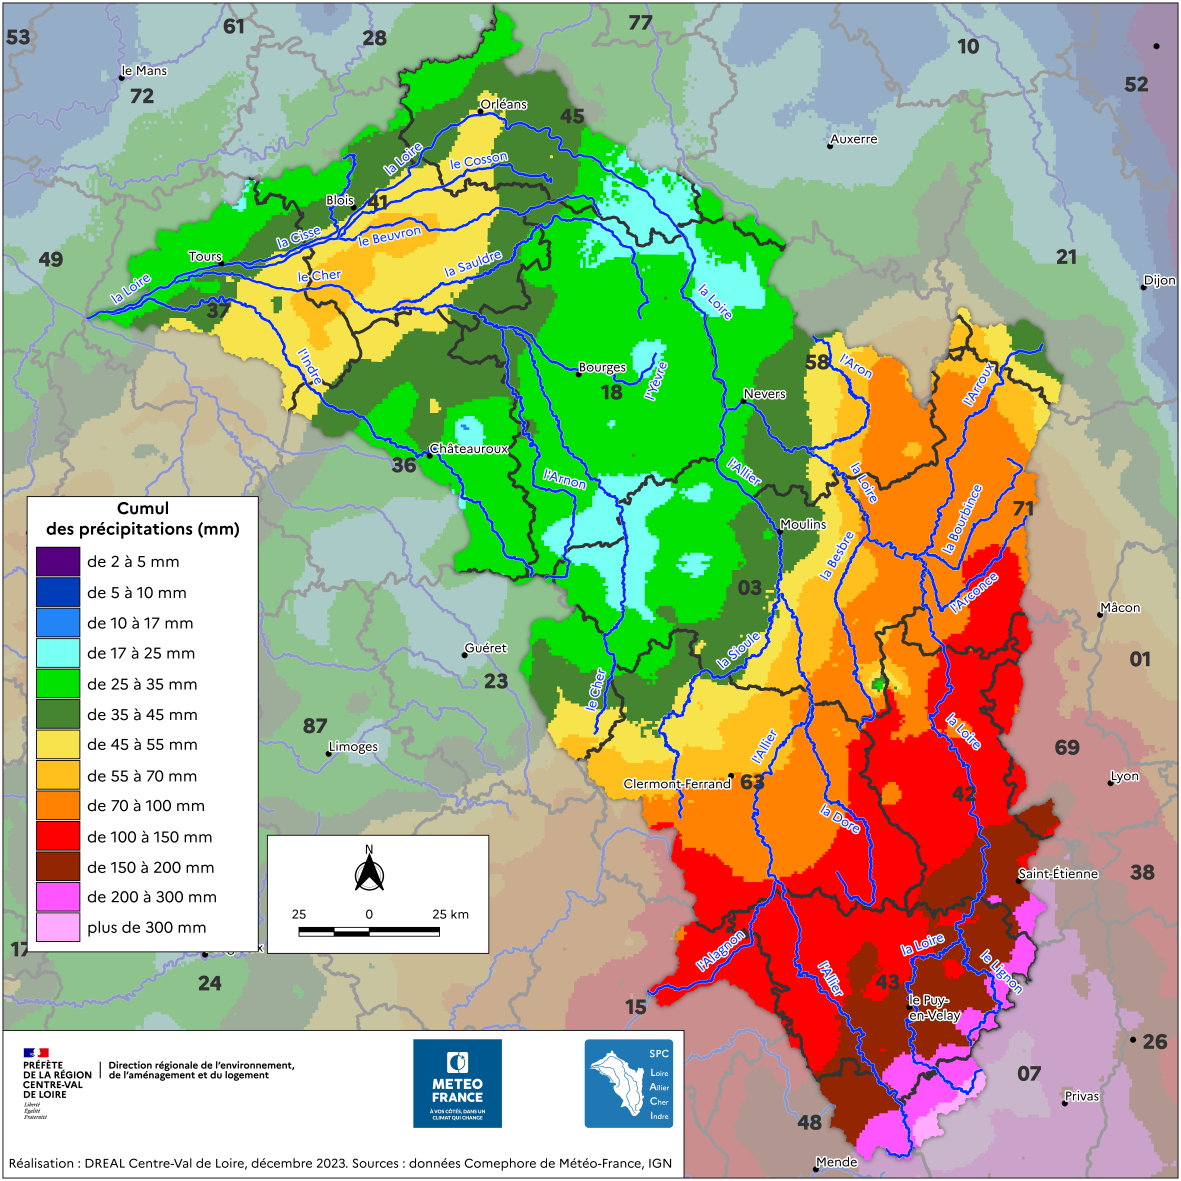 Cumuls des précipitations en 4 jours, du 30/11/2003 à 6h UTC au 4/12/2003 à 6h UTC, sur le territoire du SPC Loire-Allier-Cher-Indre (données Comephore Météo-France)